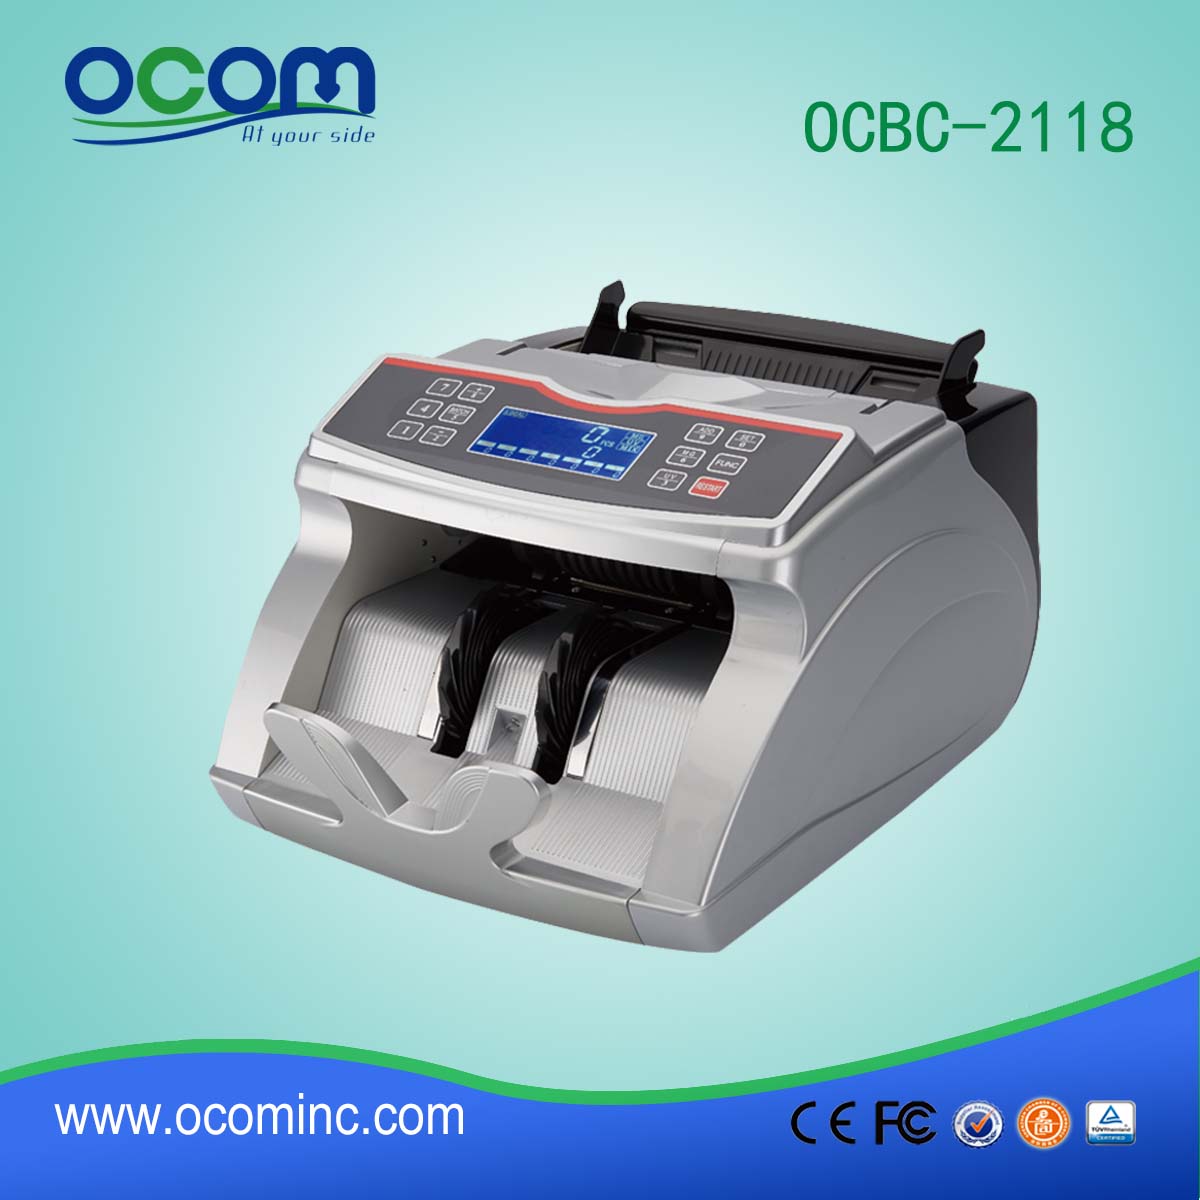 Contatore di fatture aggiornato OCBC 2118 Mix Value Money Count Counting Machine